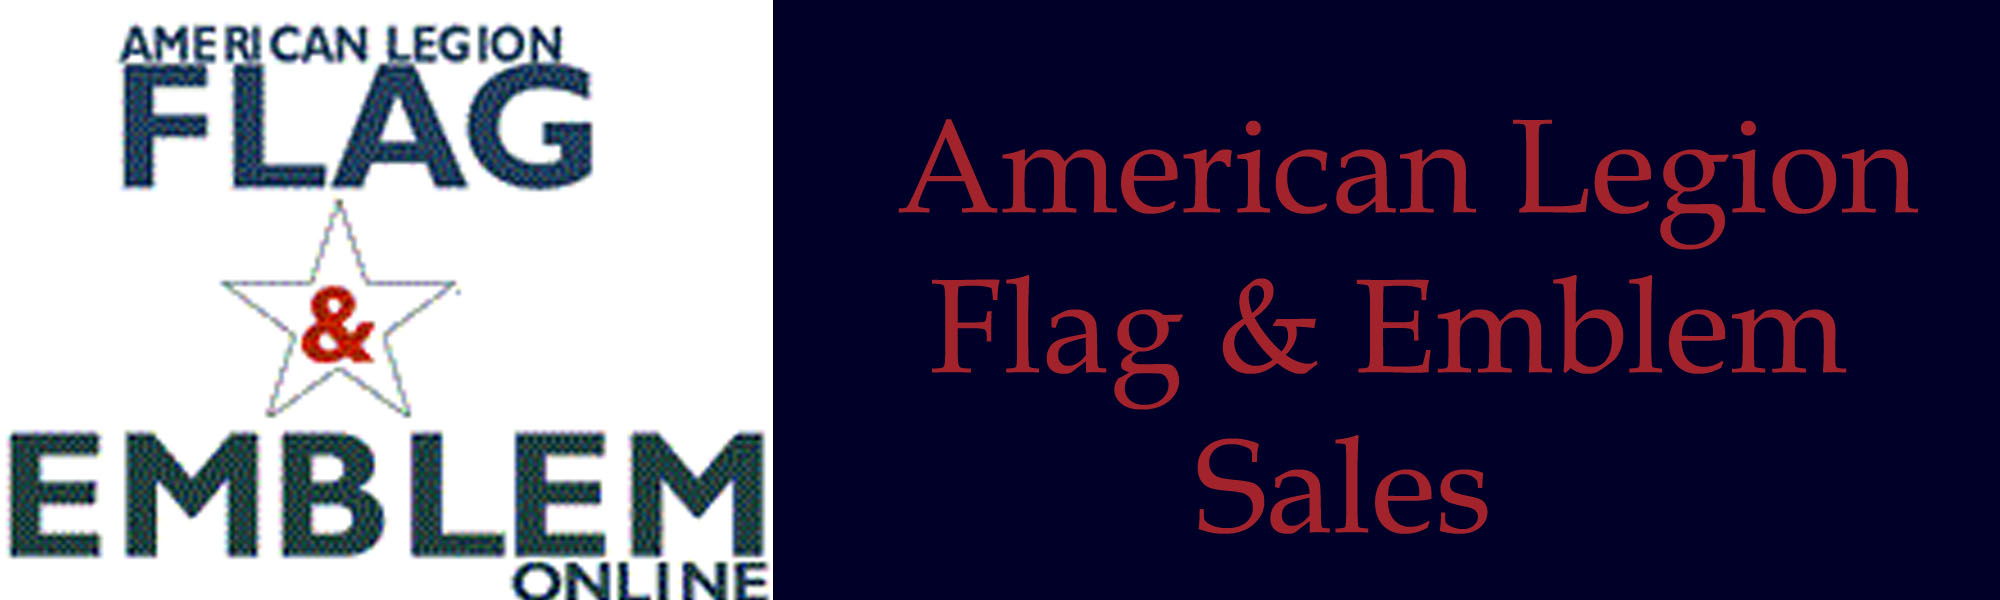 Flag & Emblem Sales